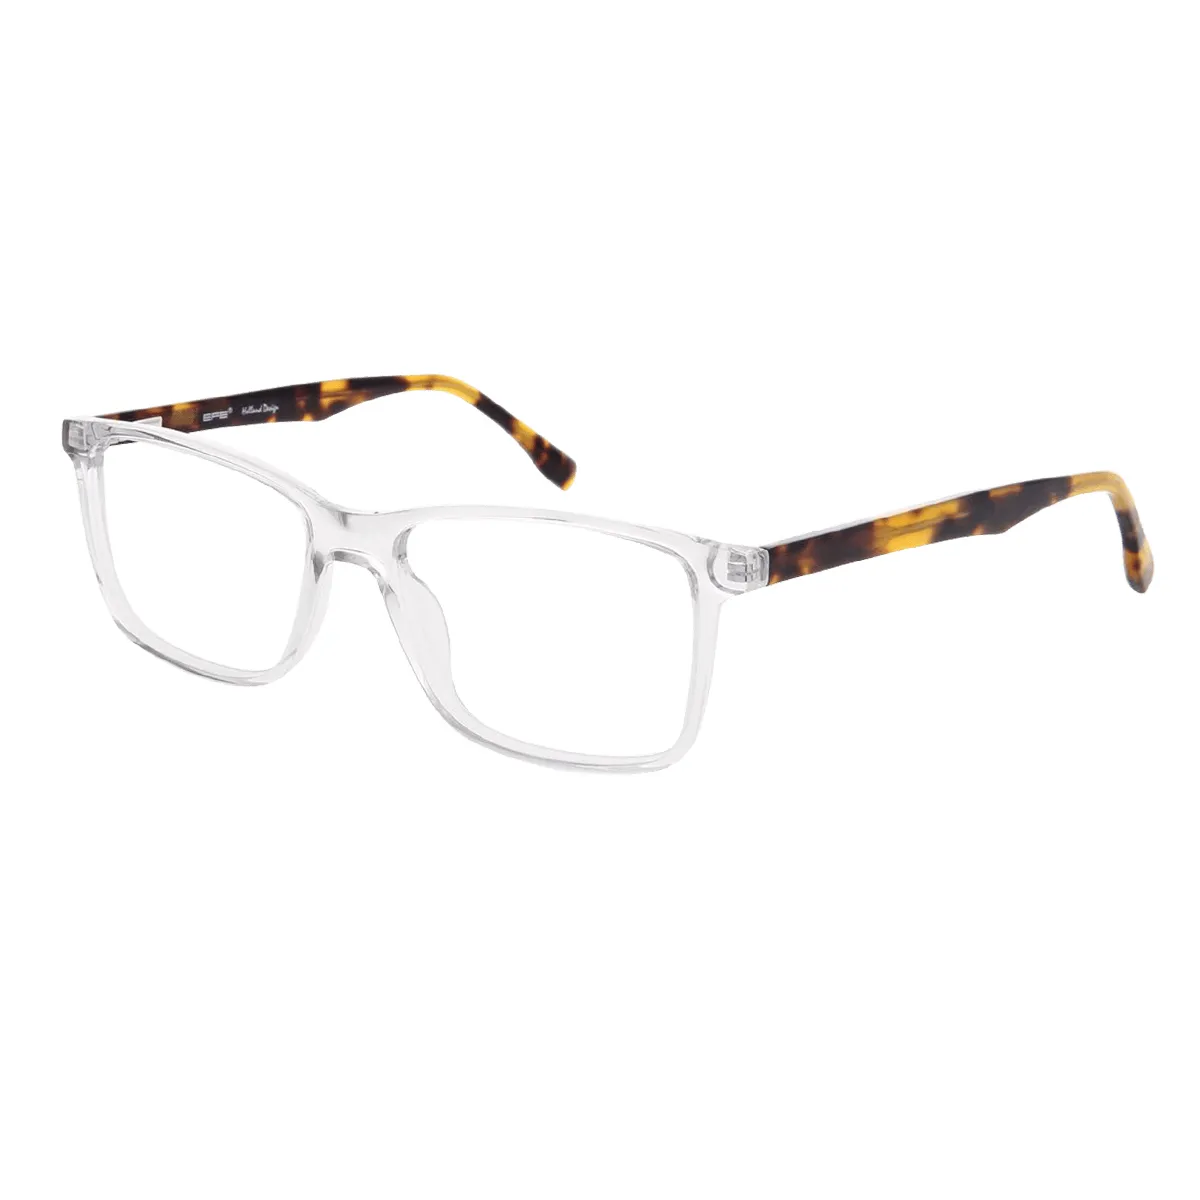 Decker - Square Translucent Glasses for Men - EFE